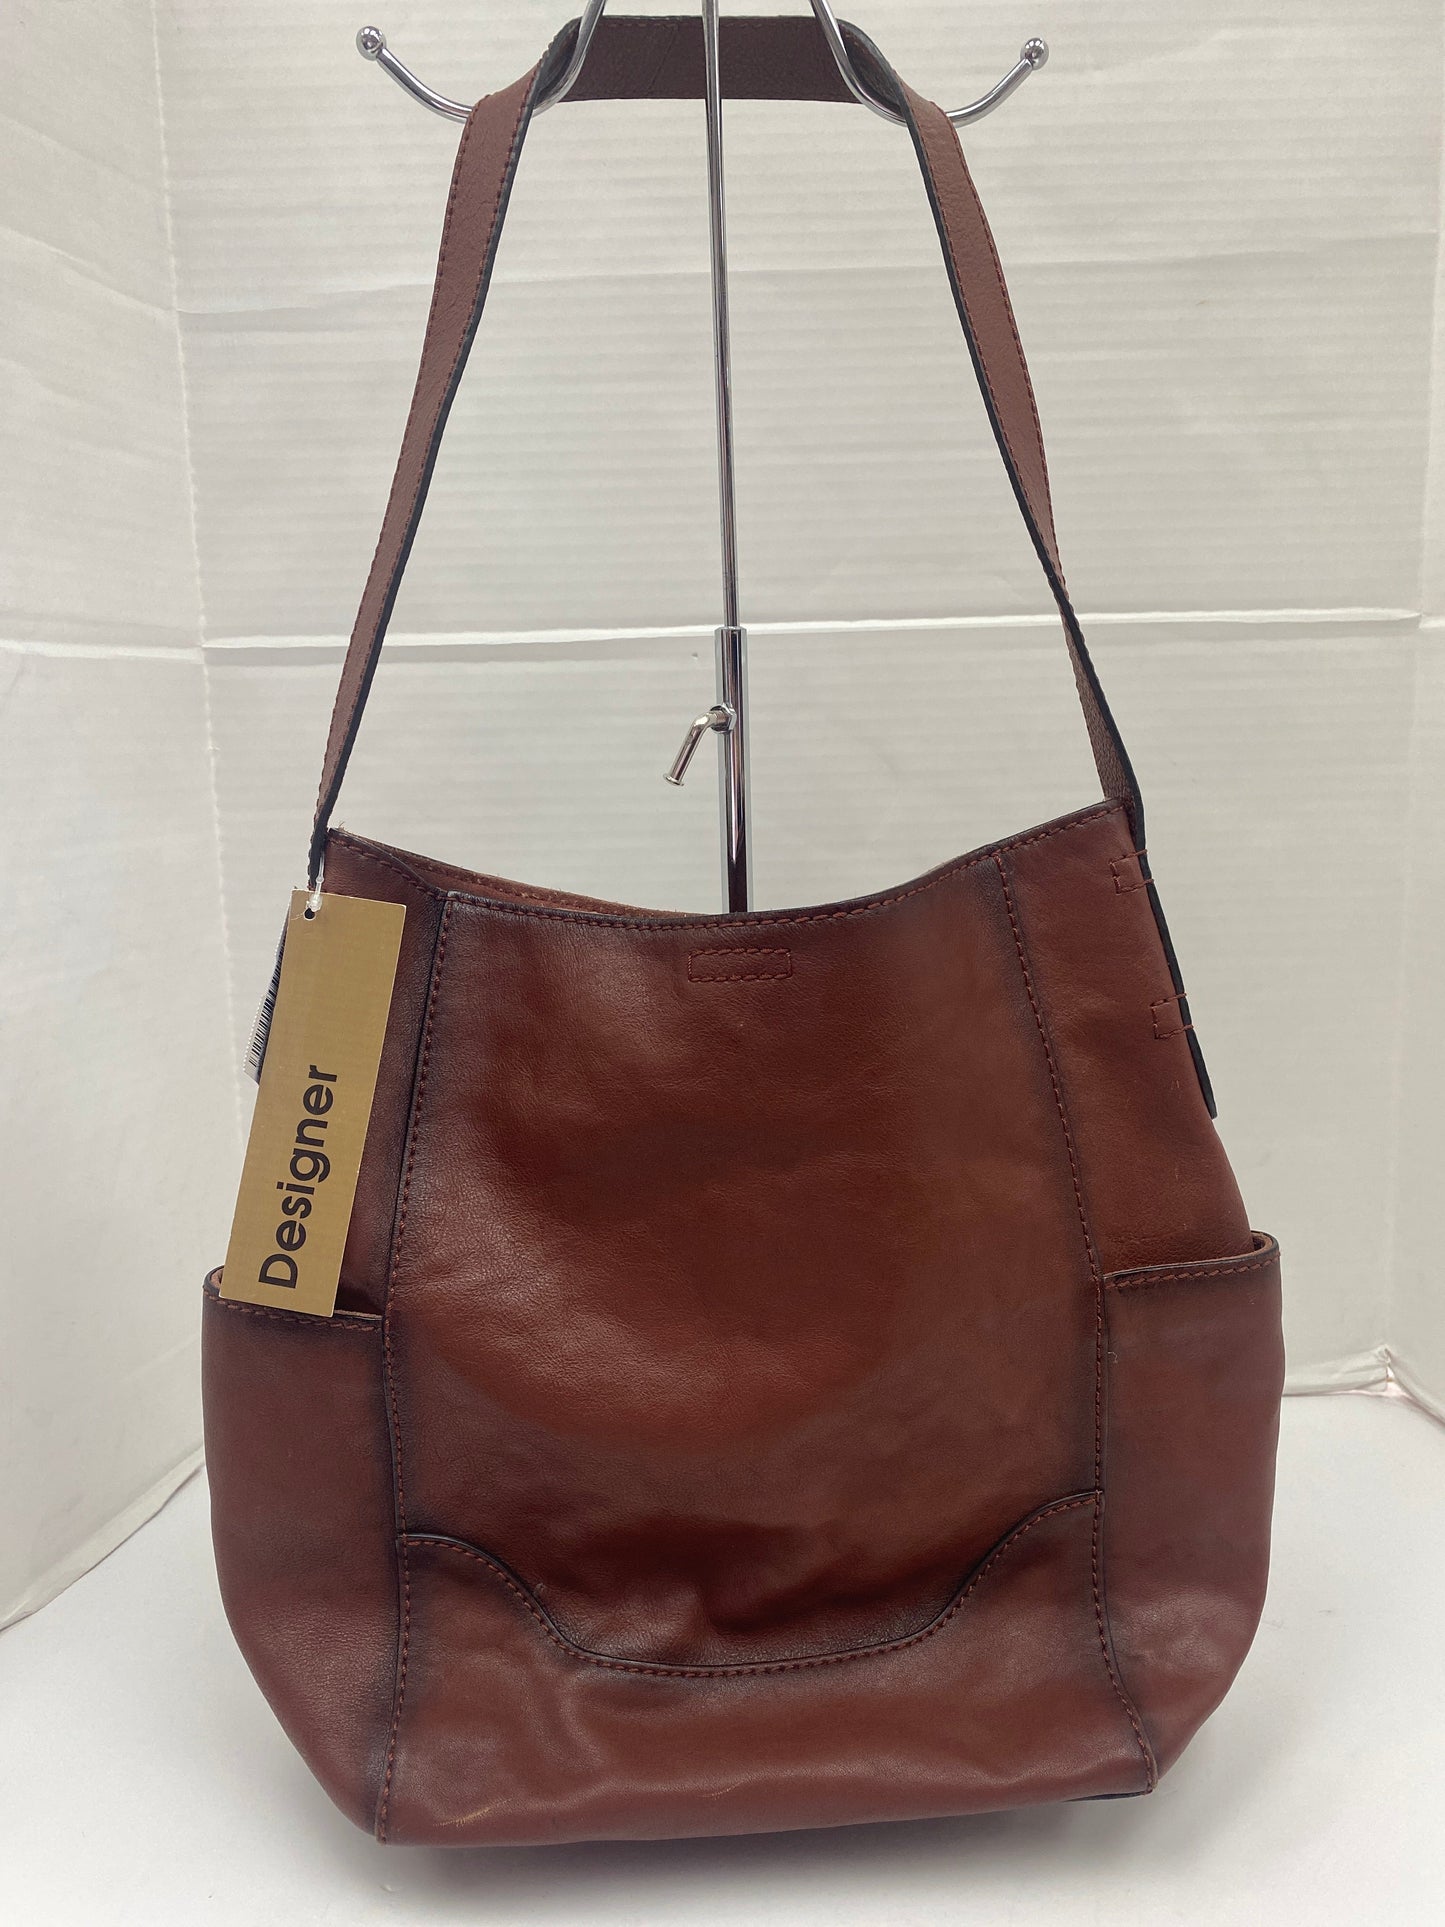 Handbag Designer Frye, Size Large